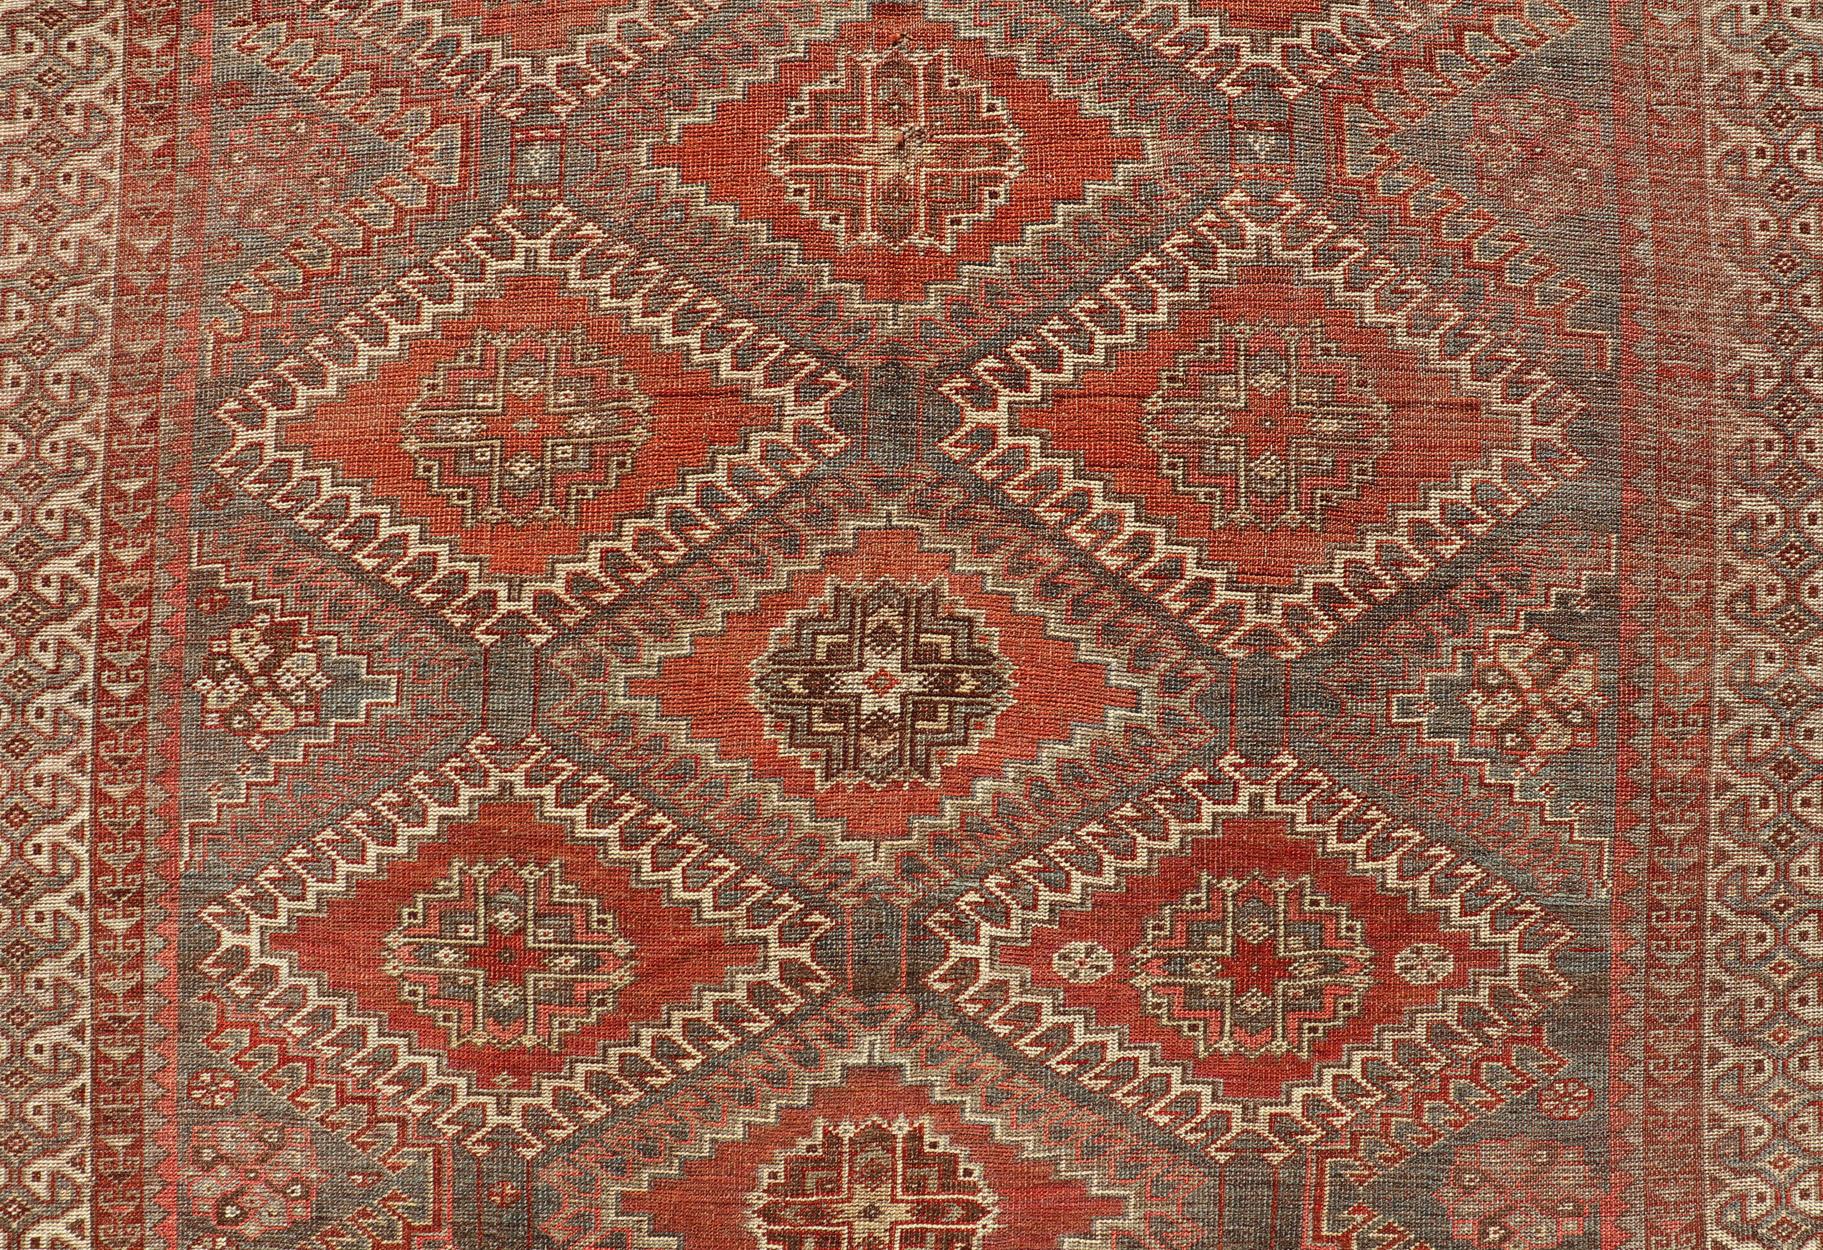 Mesures : 5'6 x 9'6 
Tapis ancien géométrique persan Shiraz à motifs de médaillons sur toute la surface. Keivan Woven Arts / tapis EMB-22105-15105, pays d'origine / type : Iran / Shiraz, circa 1930.

Le tapis persan Shiraz (vers le début du 20e